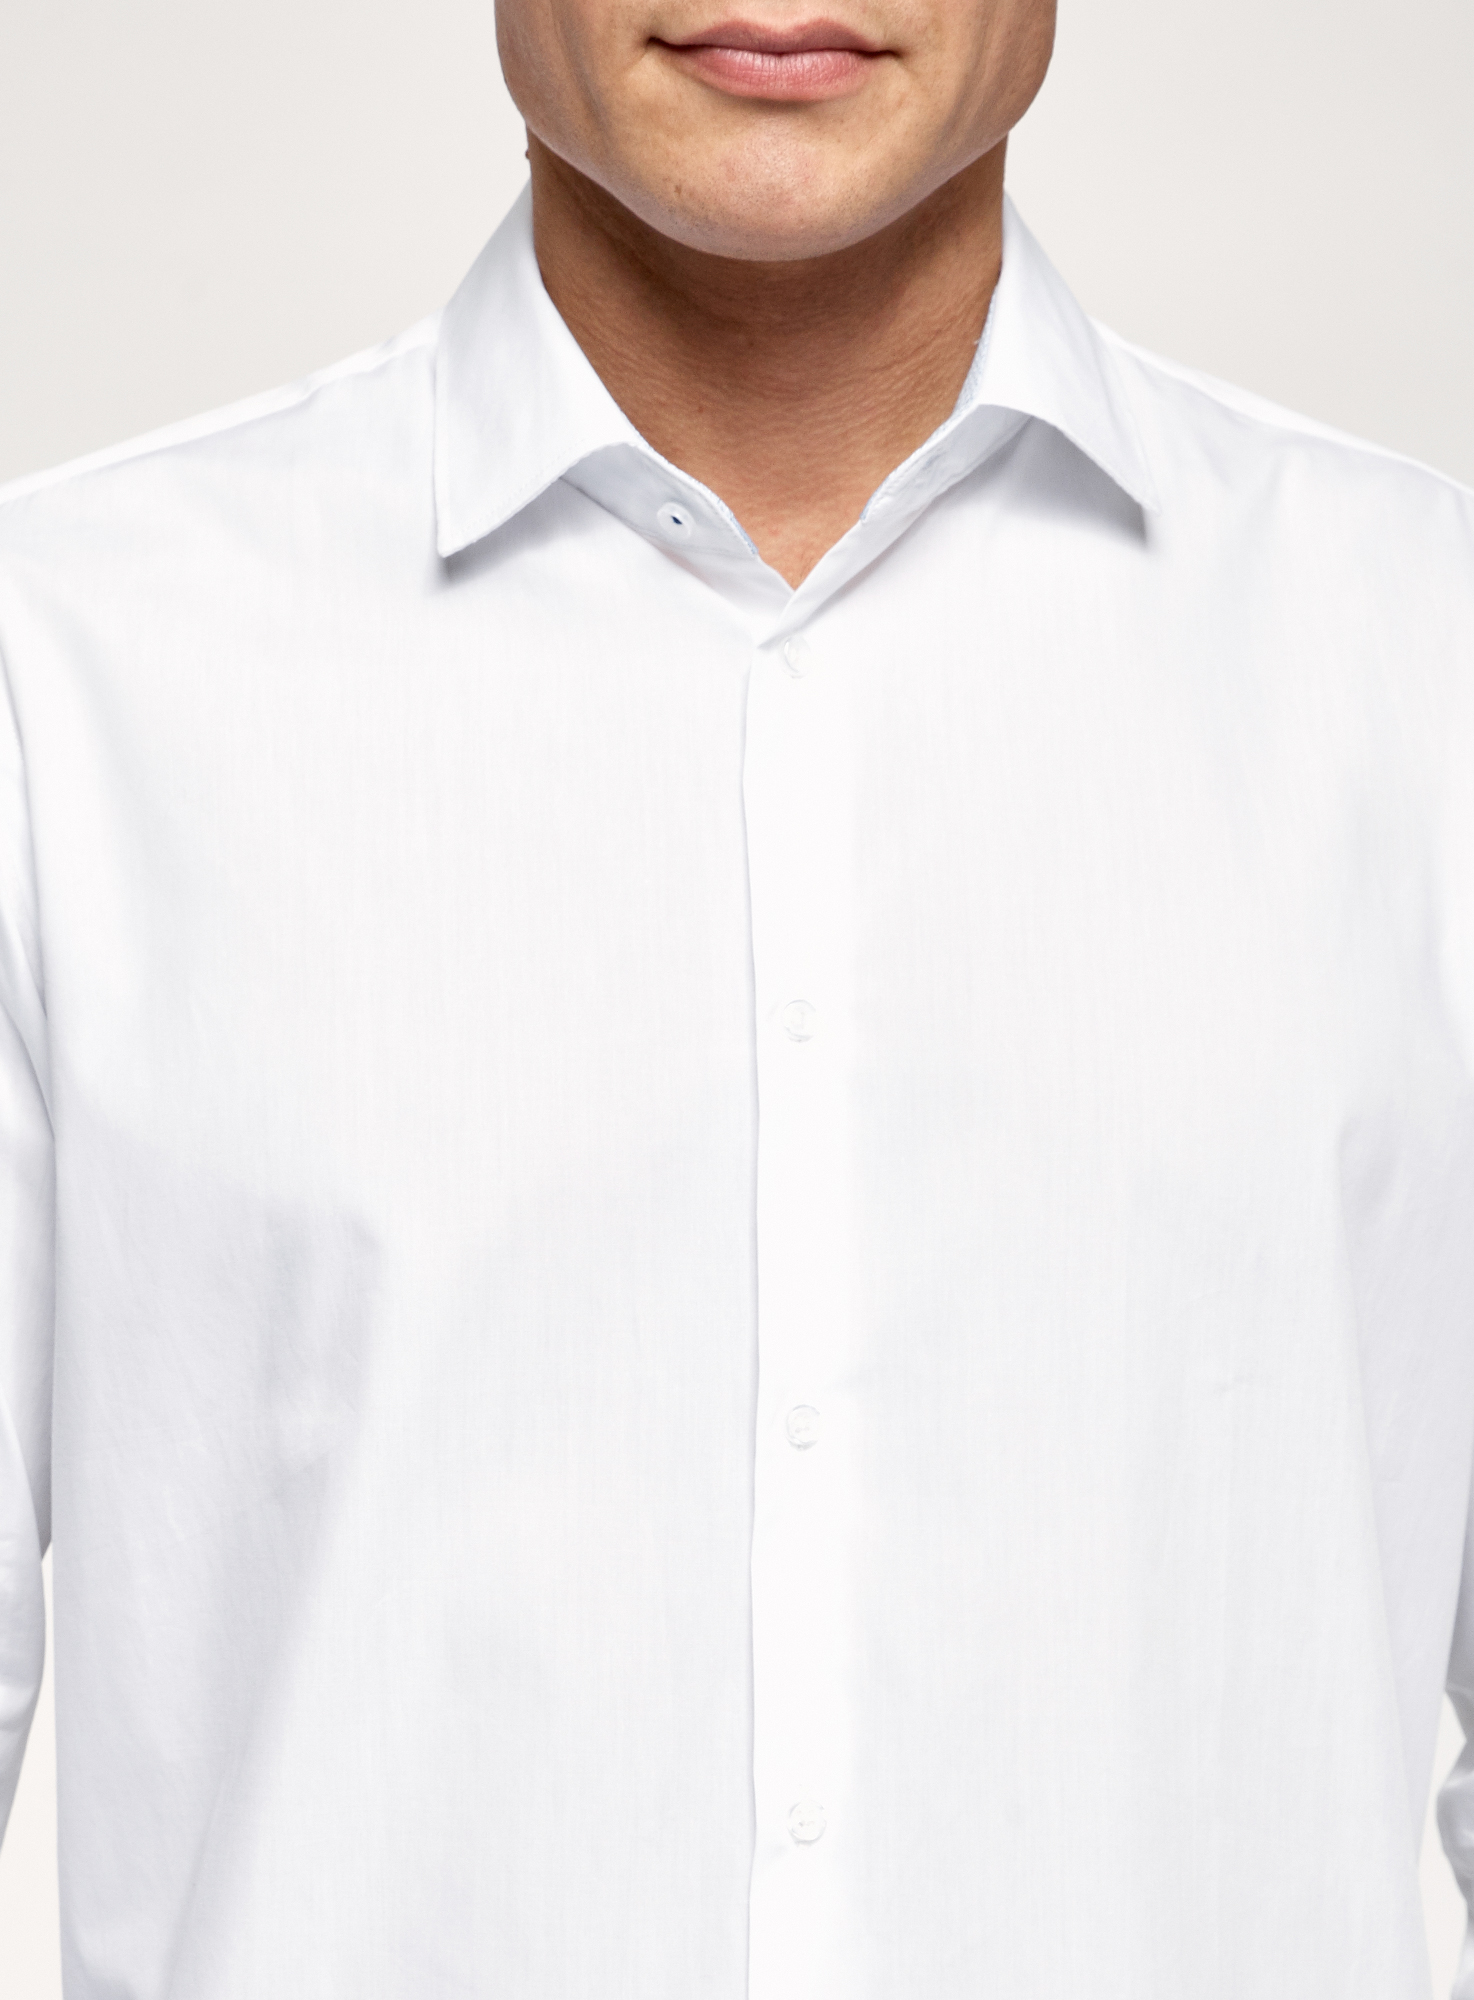 Рубашка мужская oodji 3L130001M белая XL